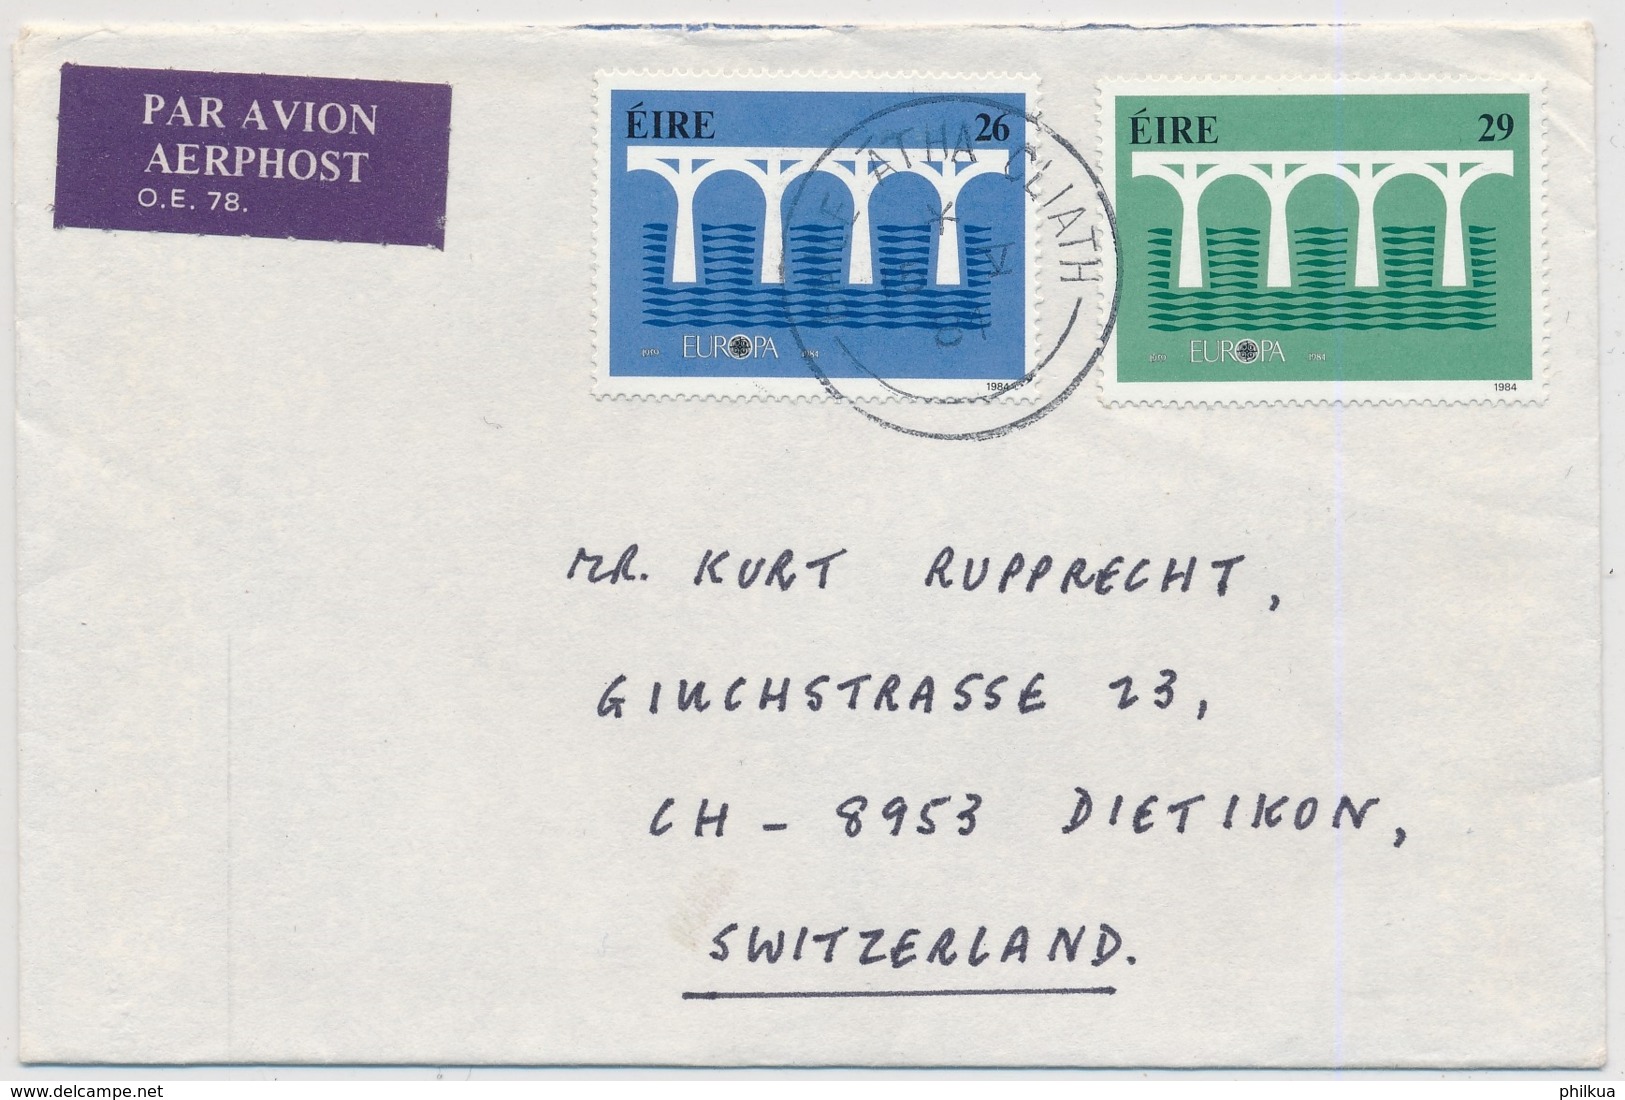 Irland - Europamarken 1984 Auf Luftpost Brief Gelaufen BAILE ARHA CLIATH - DIETIKON Schweiz - 1984